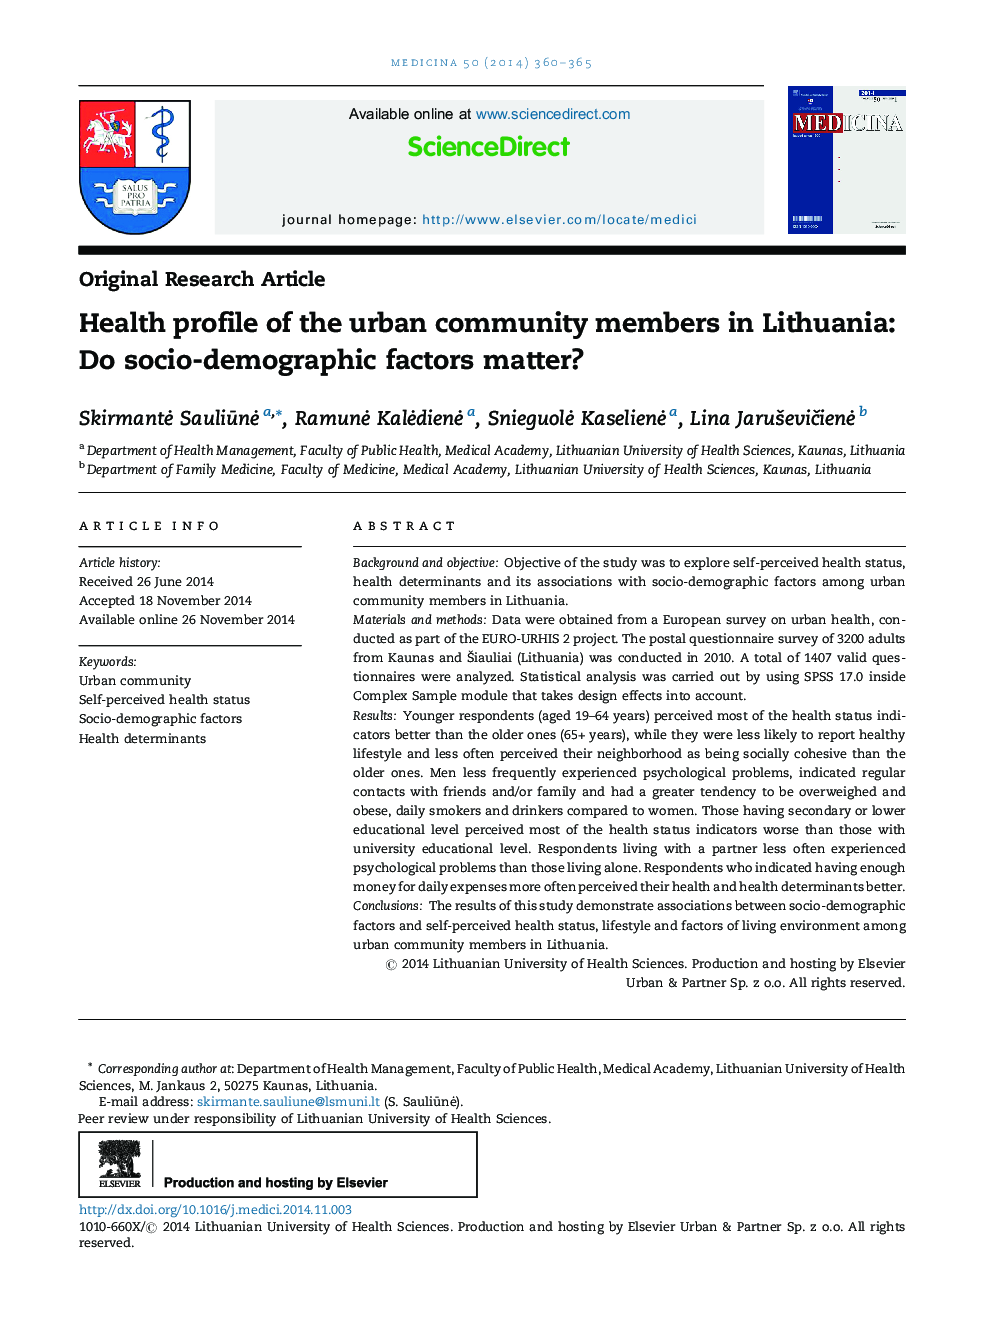 مشخصات بهداشتی اعضای جامعه شهری در لیتوانی: آیا عوامل اجتماعی-دموگرافیک مهم است؟ 